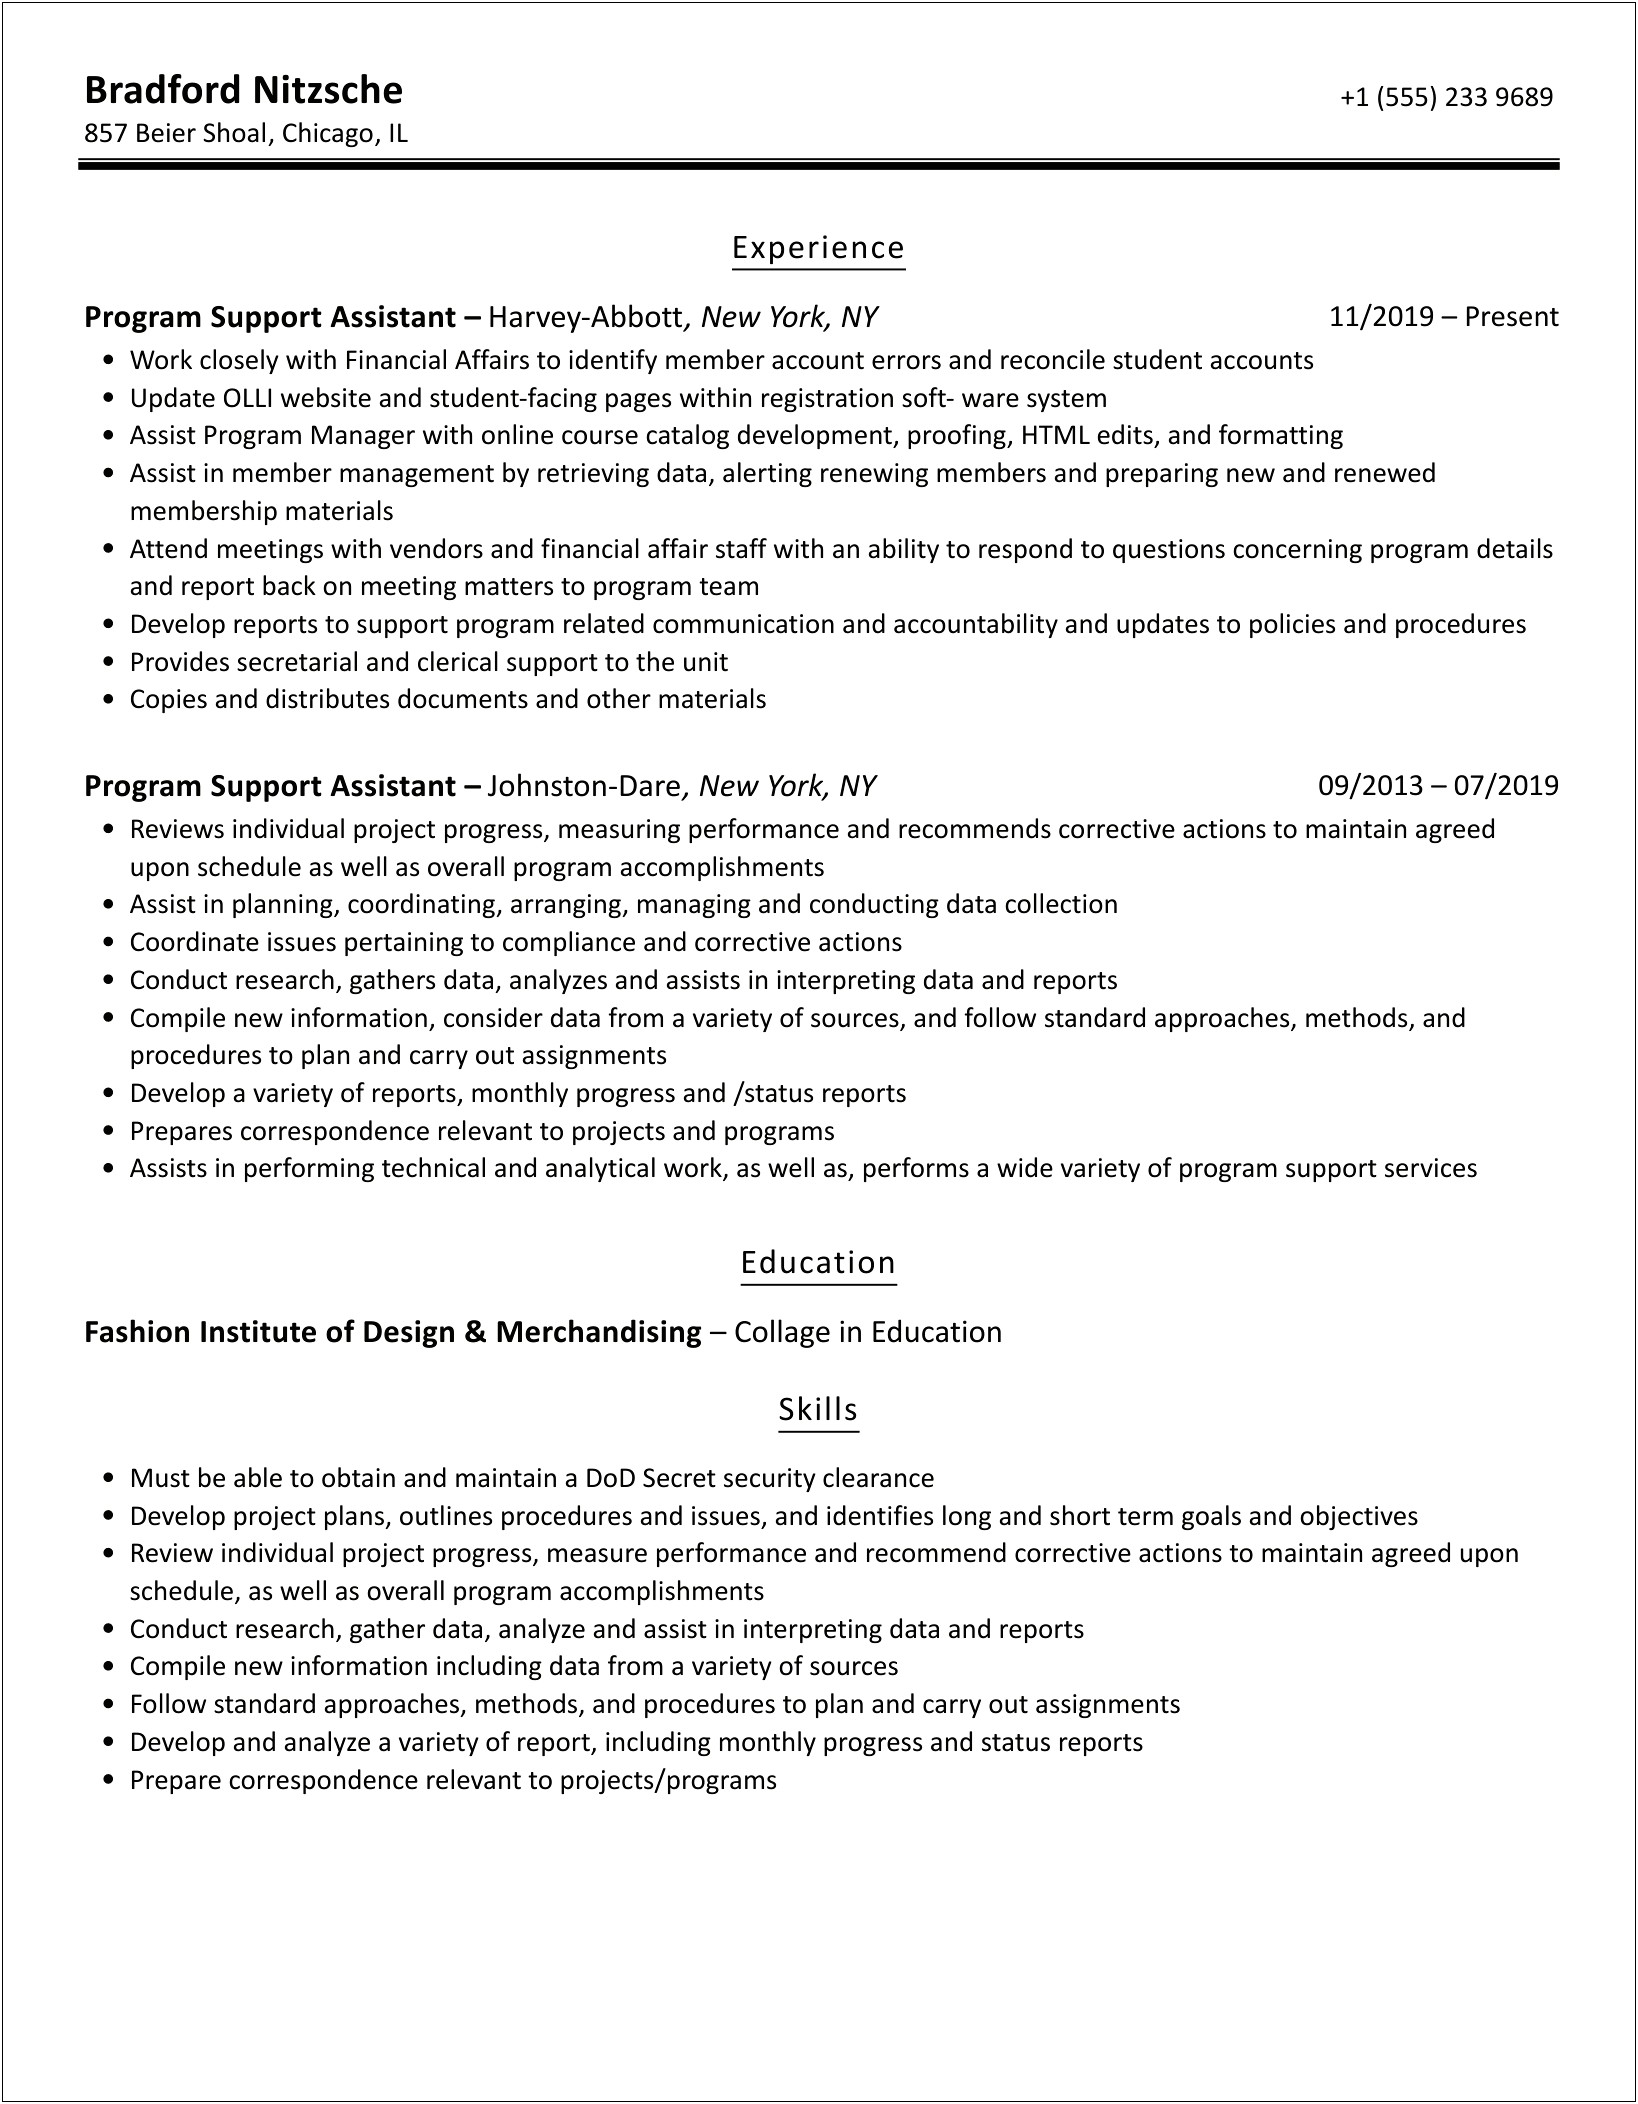 Sample Federal Resume Program Support Assistant